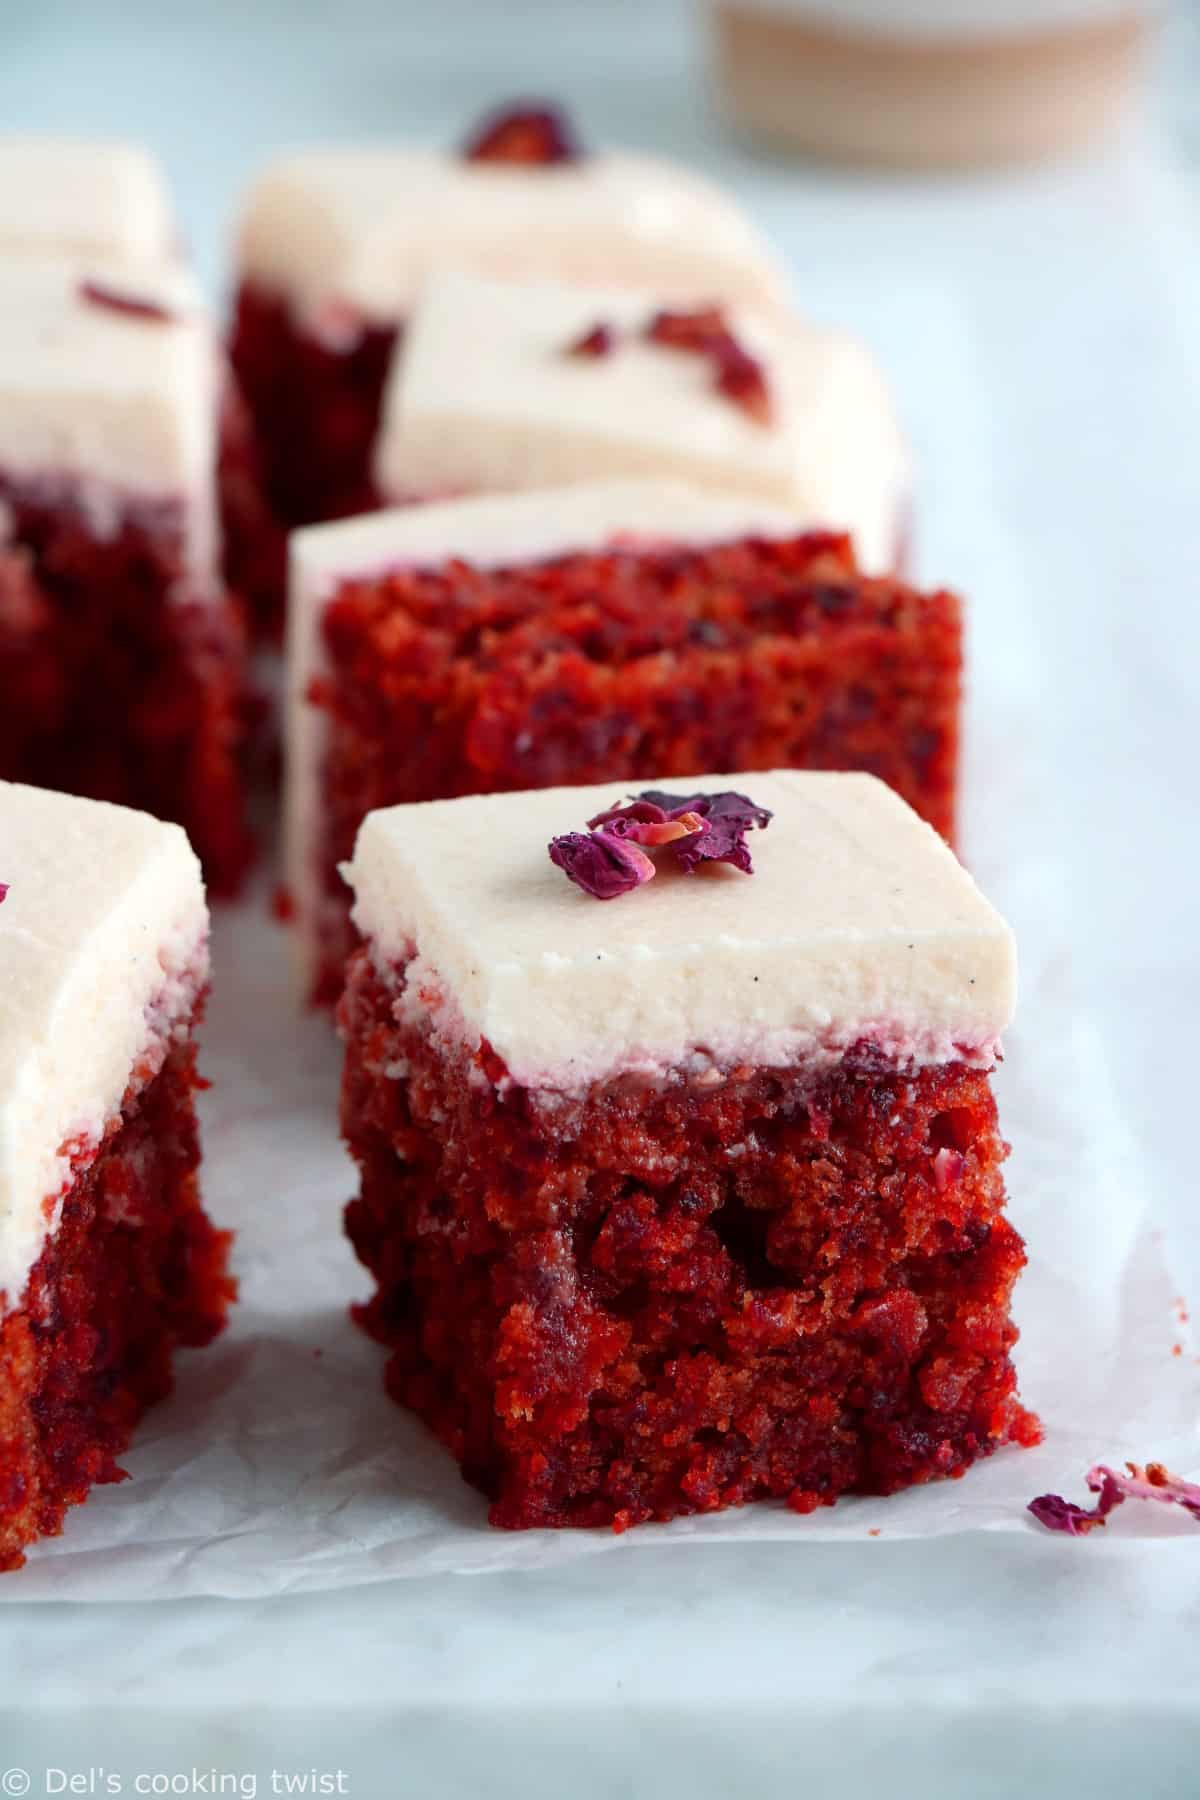 Le gâteau à la betterave façon "red velvet", c'est un dessert doux et très moelleux à la couleur rouge velour intense, réalisé sans colorant alimentaire.